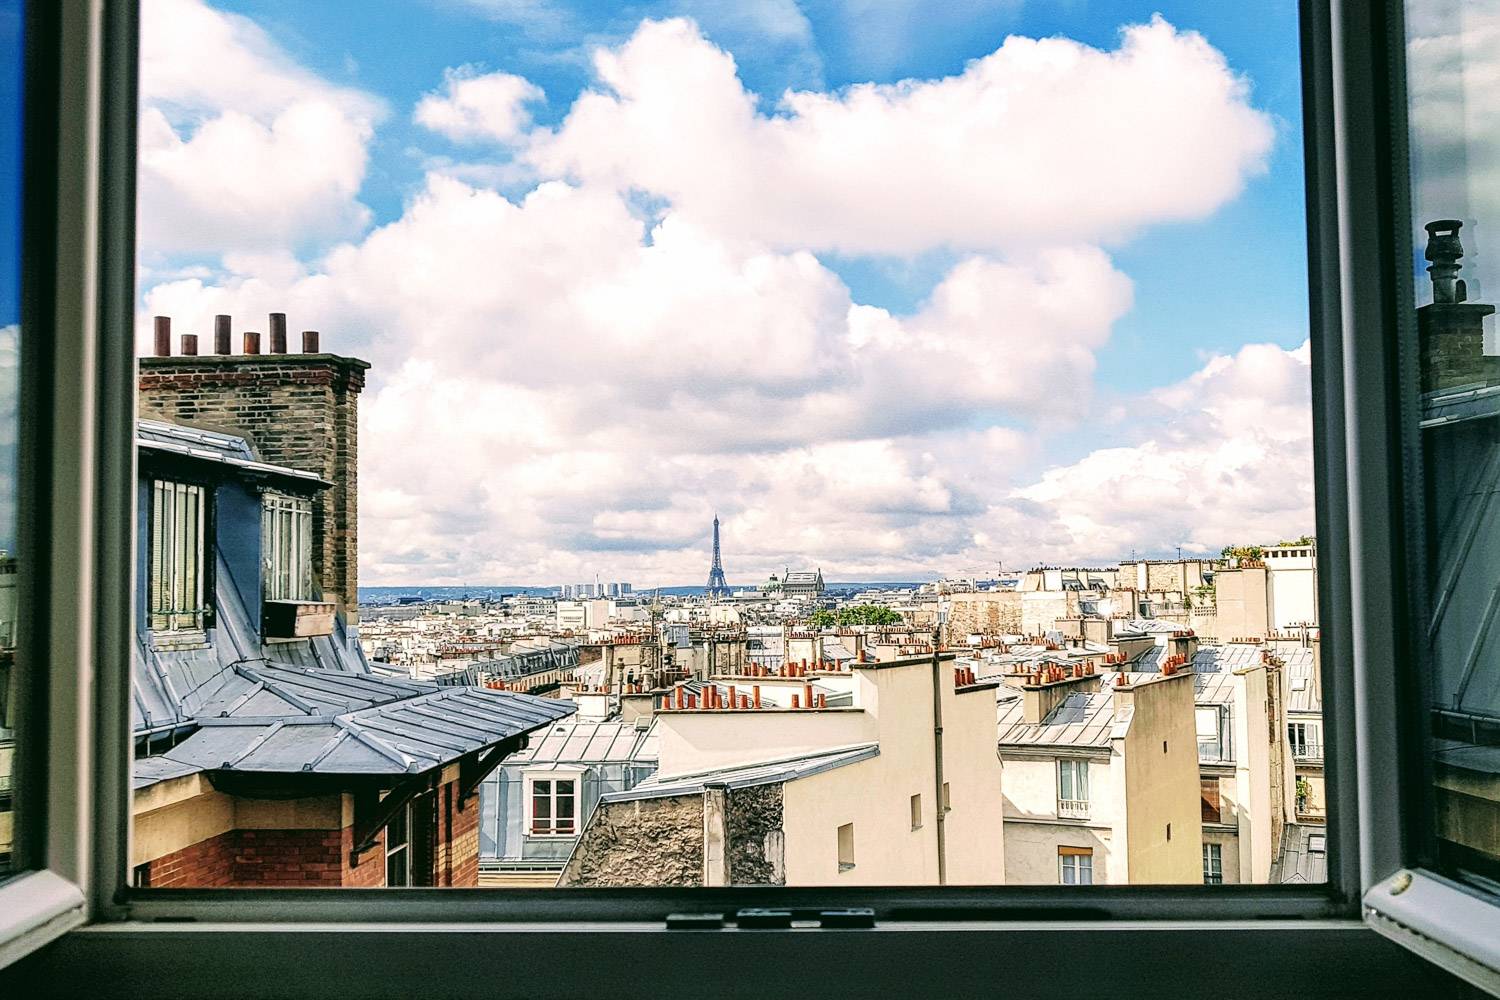 Les 5 locations de vacances parisiennes parmi les mieux notées